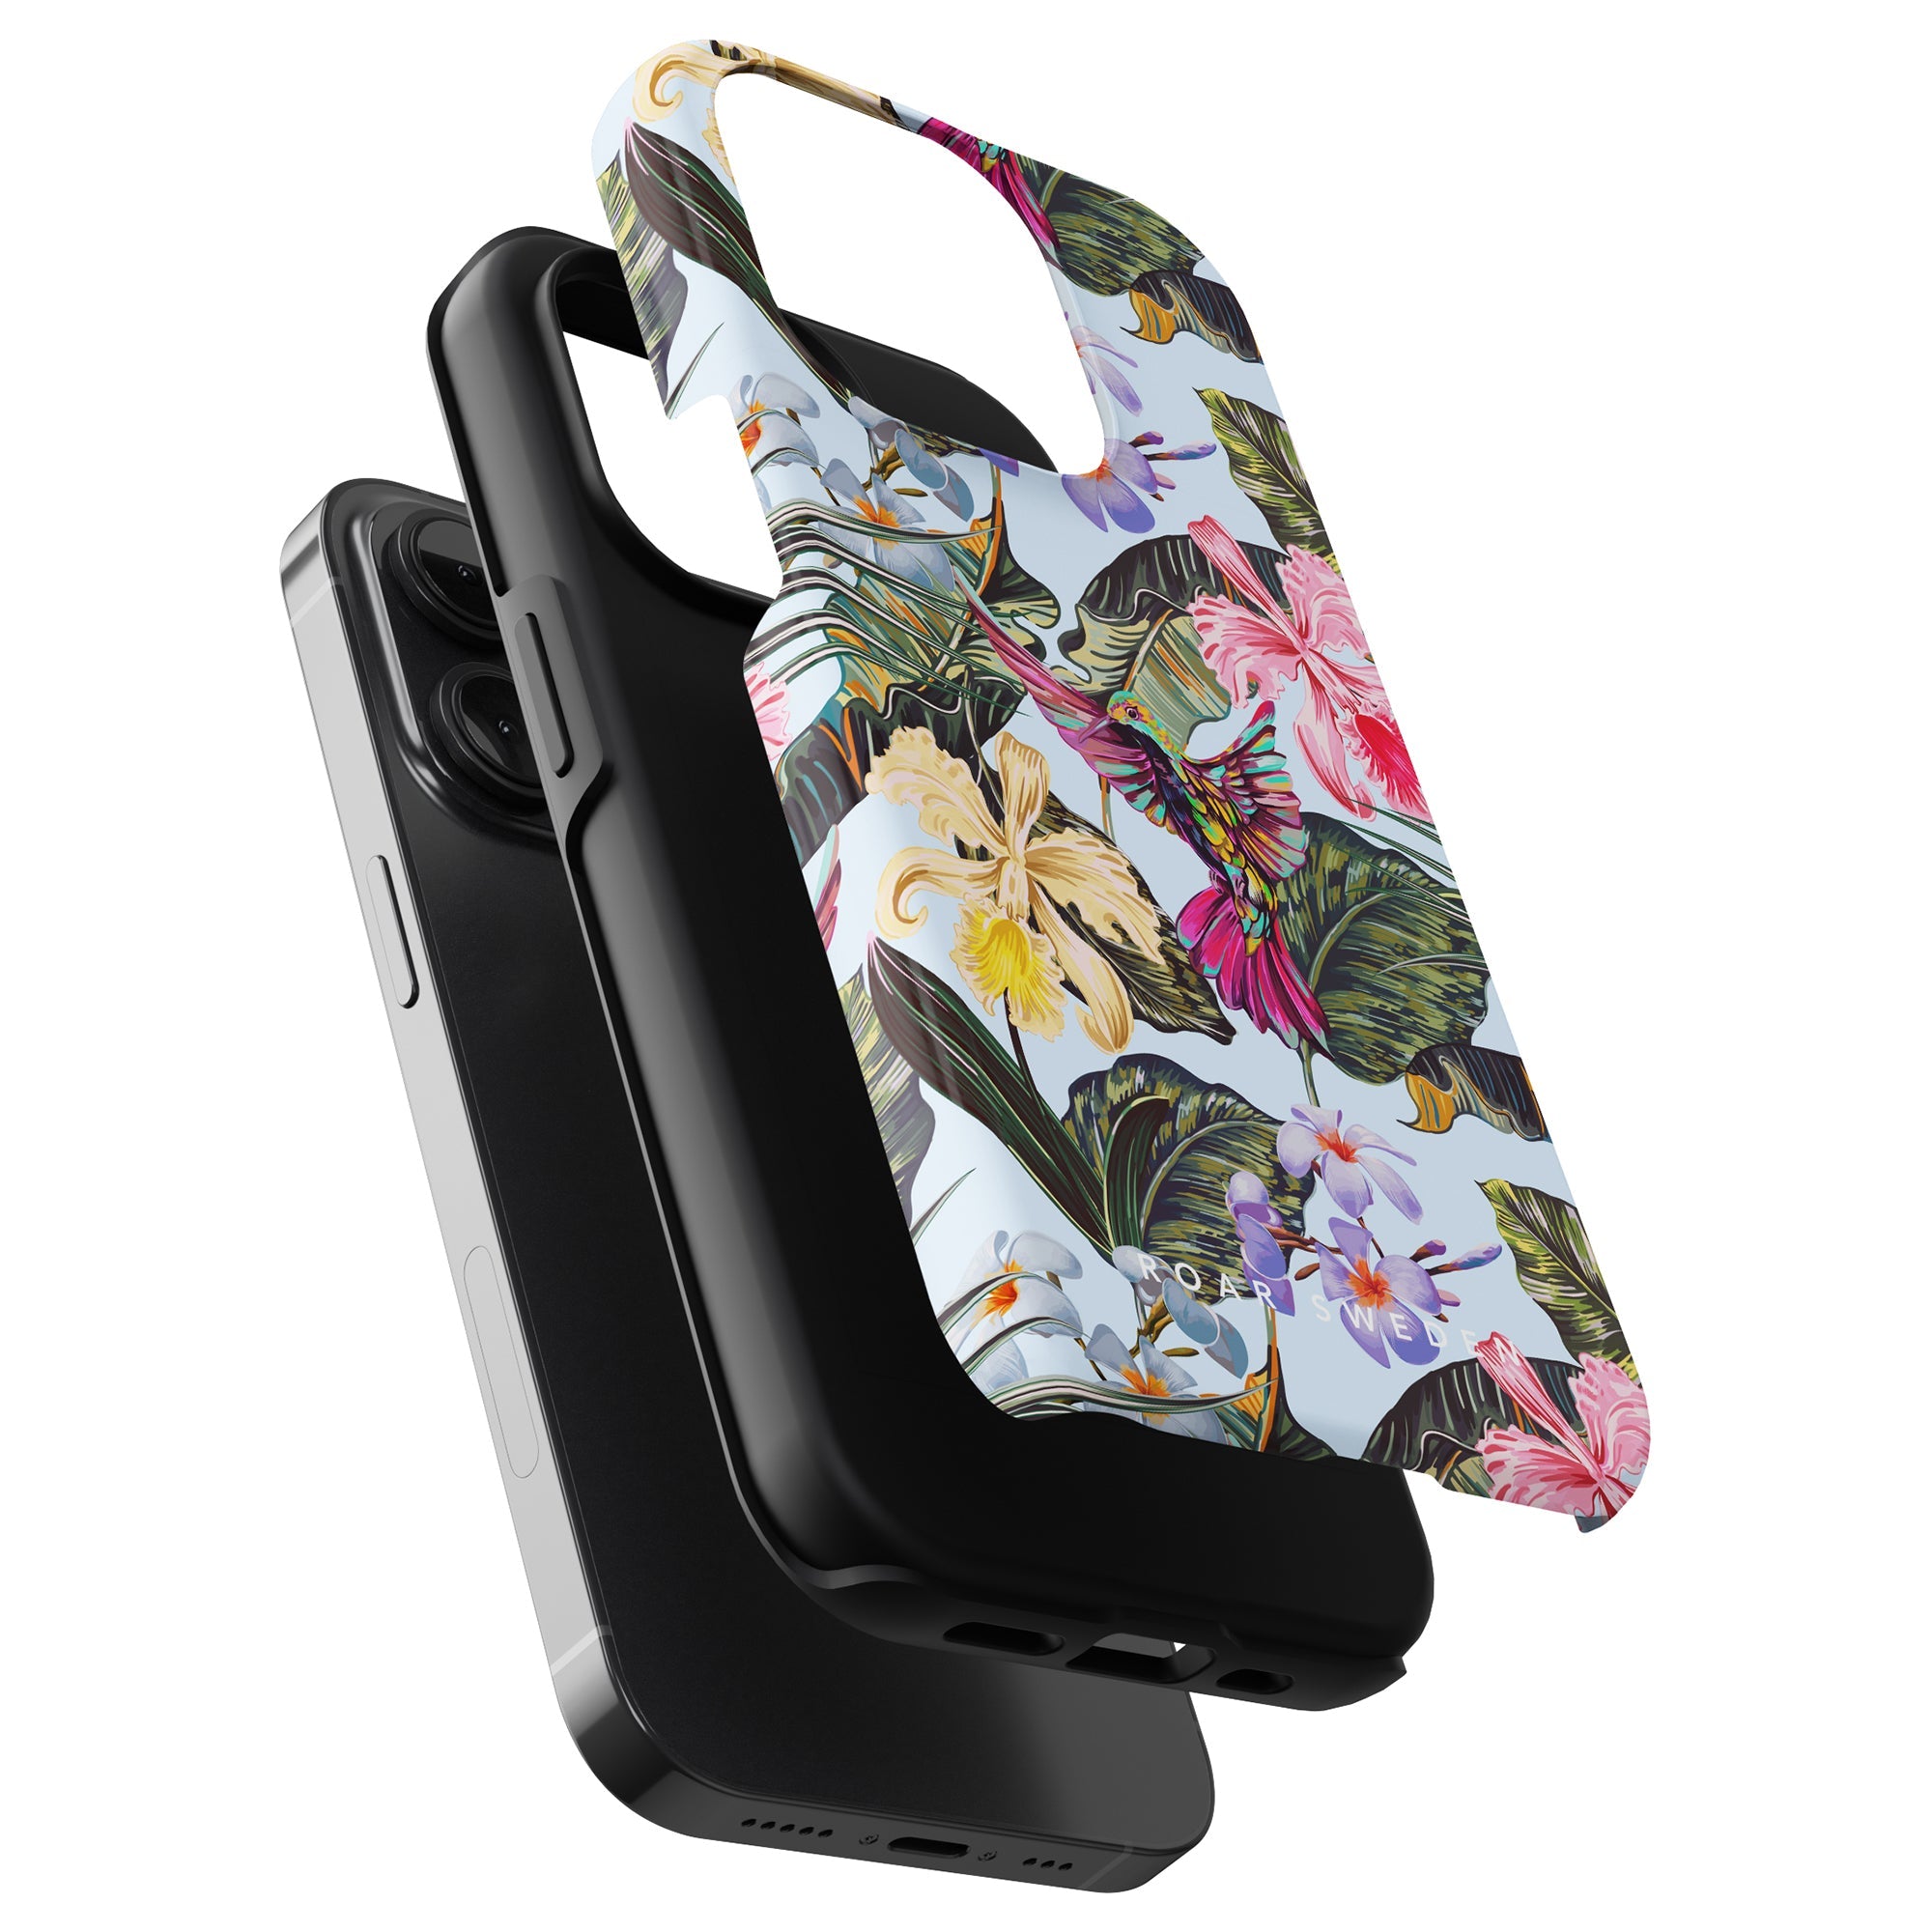 Ett färgstarkt blommigt Colibri - Tufft fodral för iPhone 11 Pro.